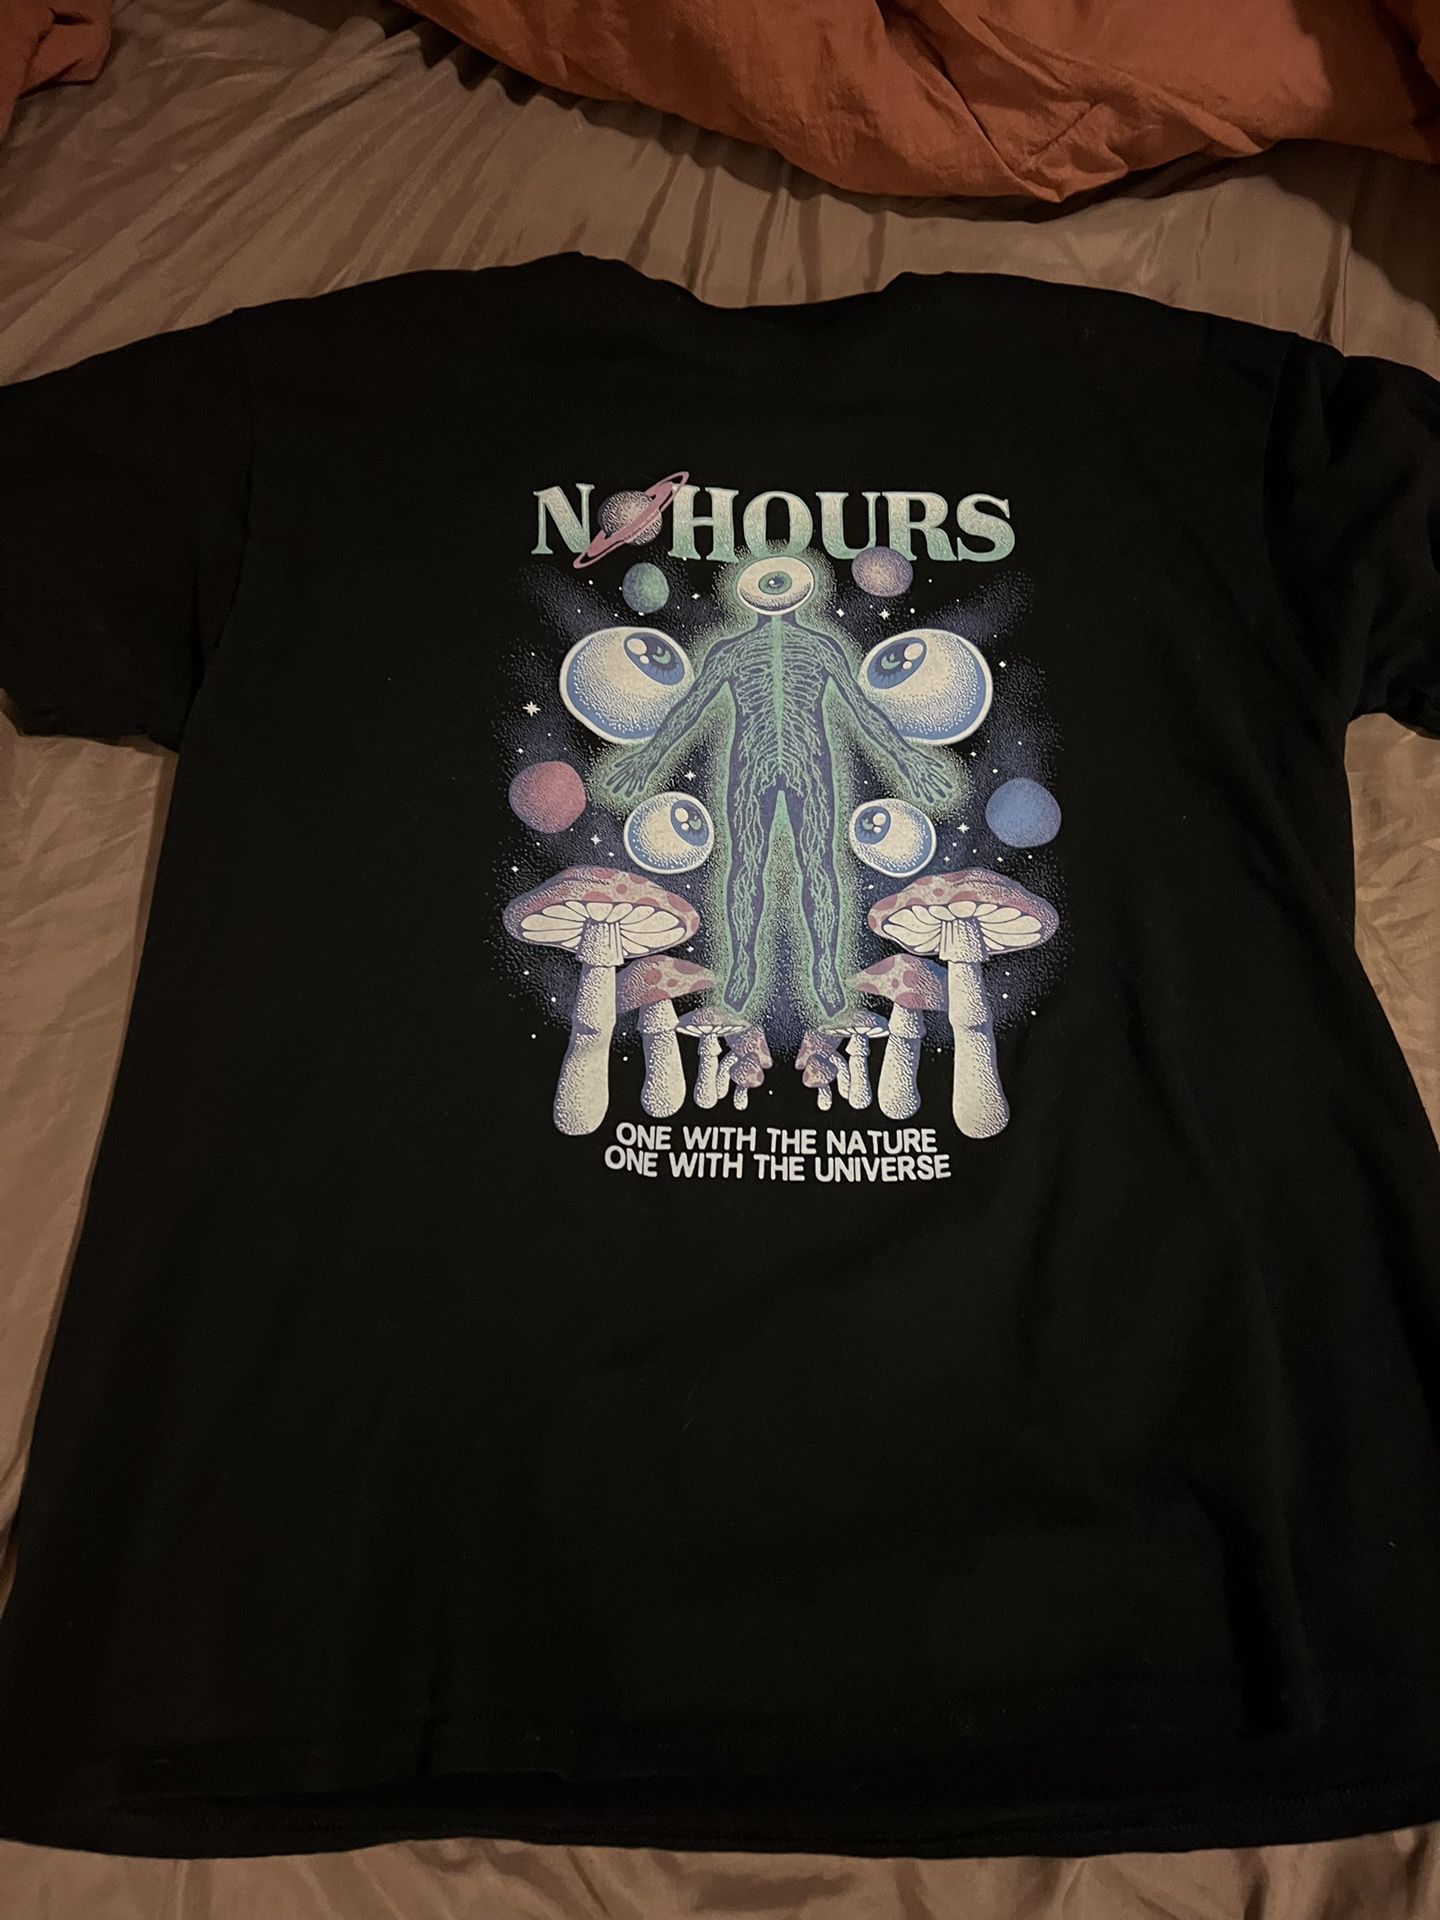 No hours Tshirt 